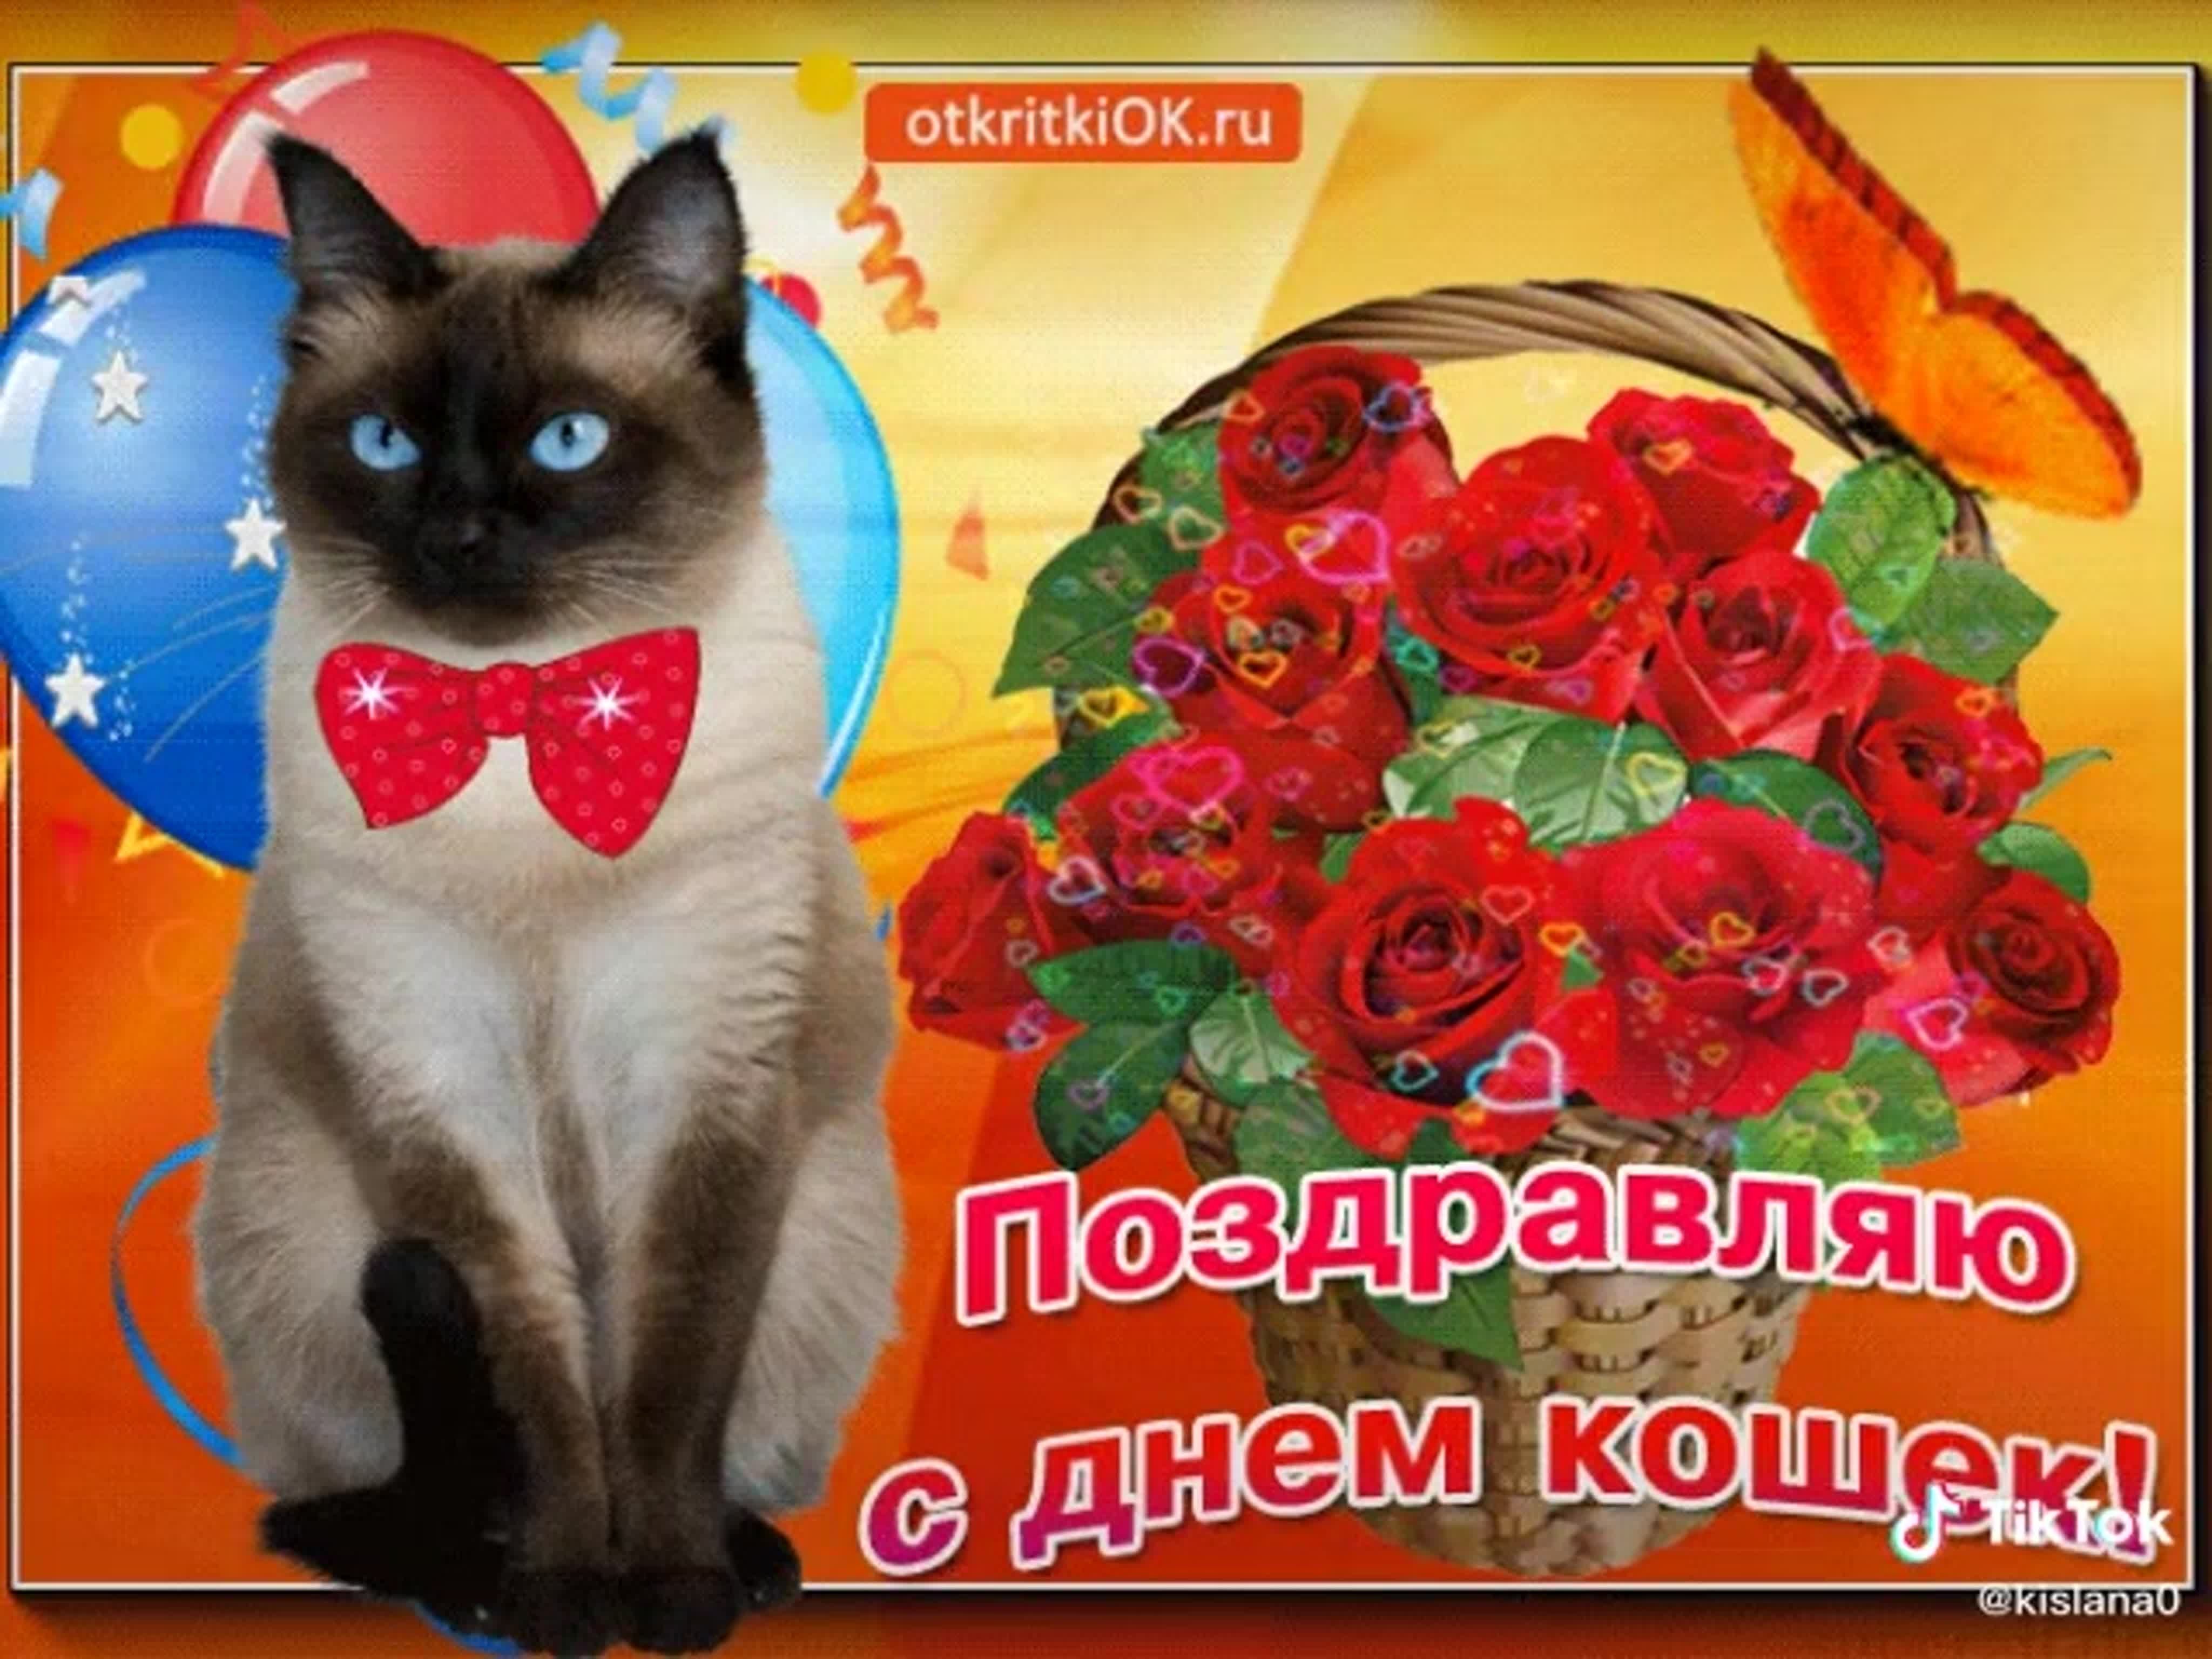 Отзыв день кошек. День кошек открытки. Поздравление с днем кошек. Всемирный день кошек открытки. Всемирный день кошек поздравления.